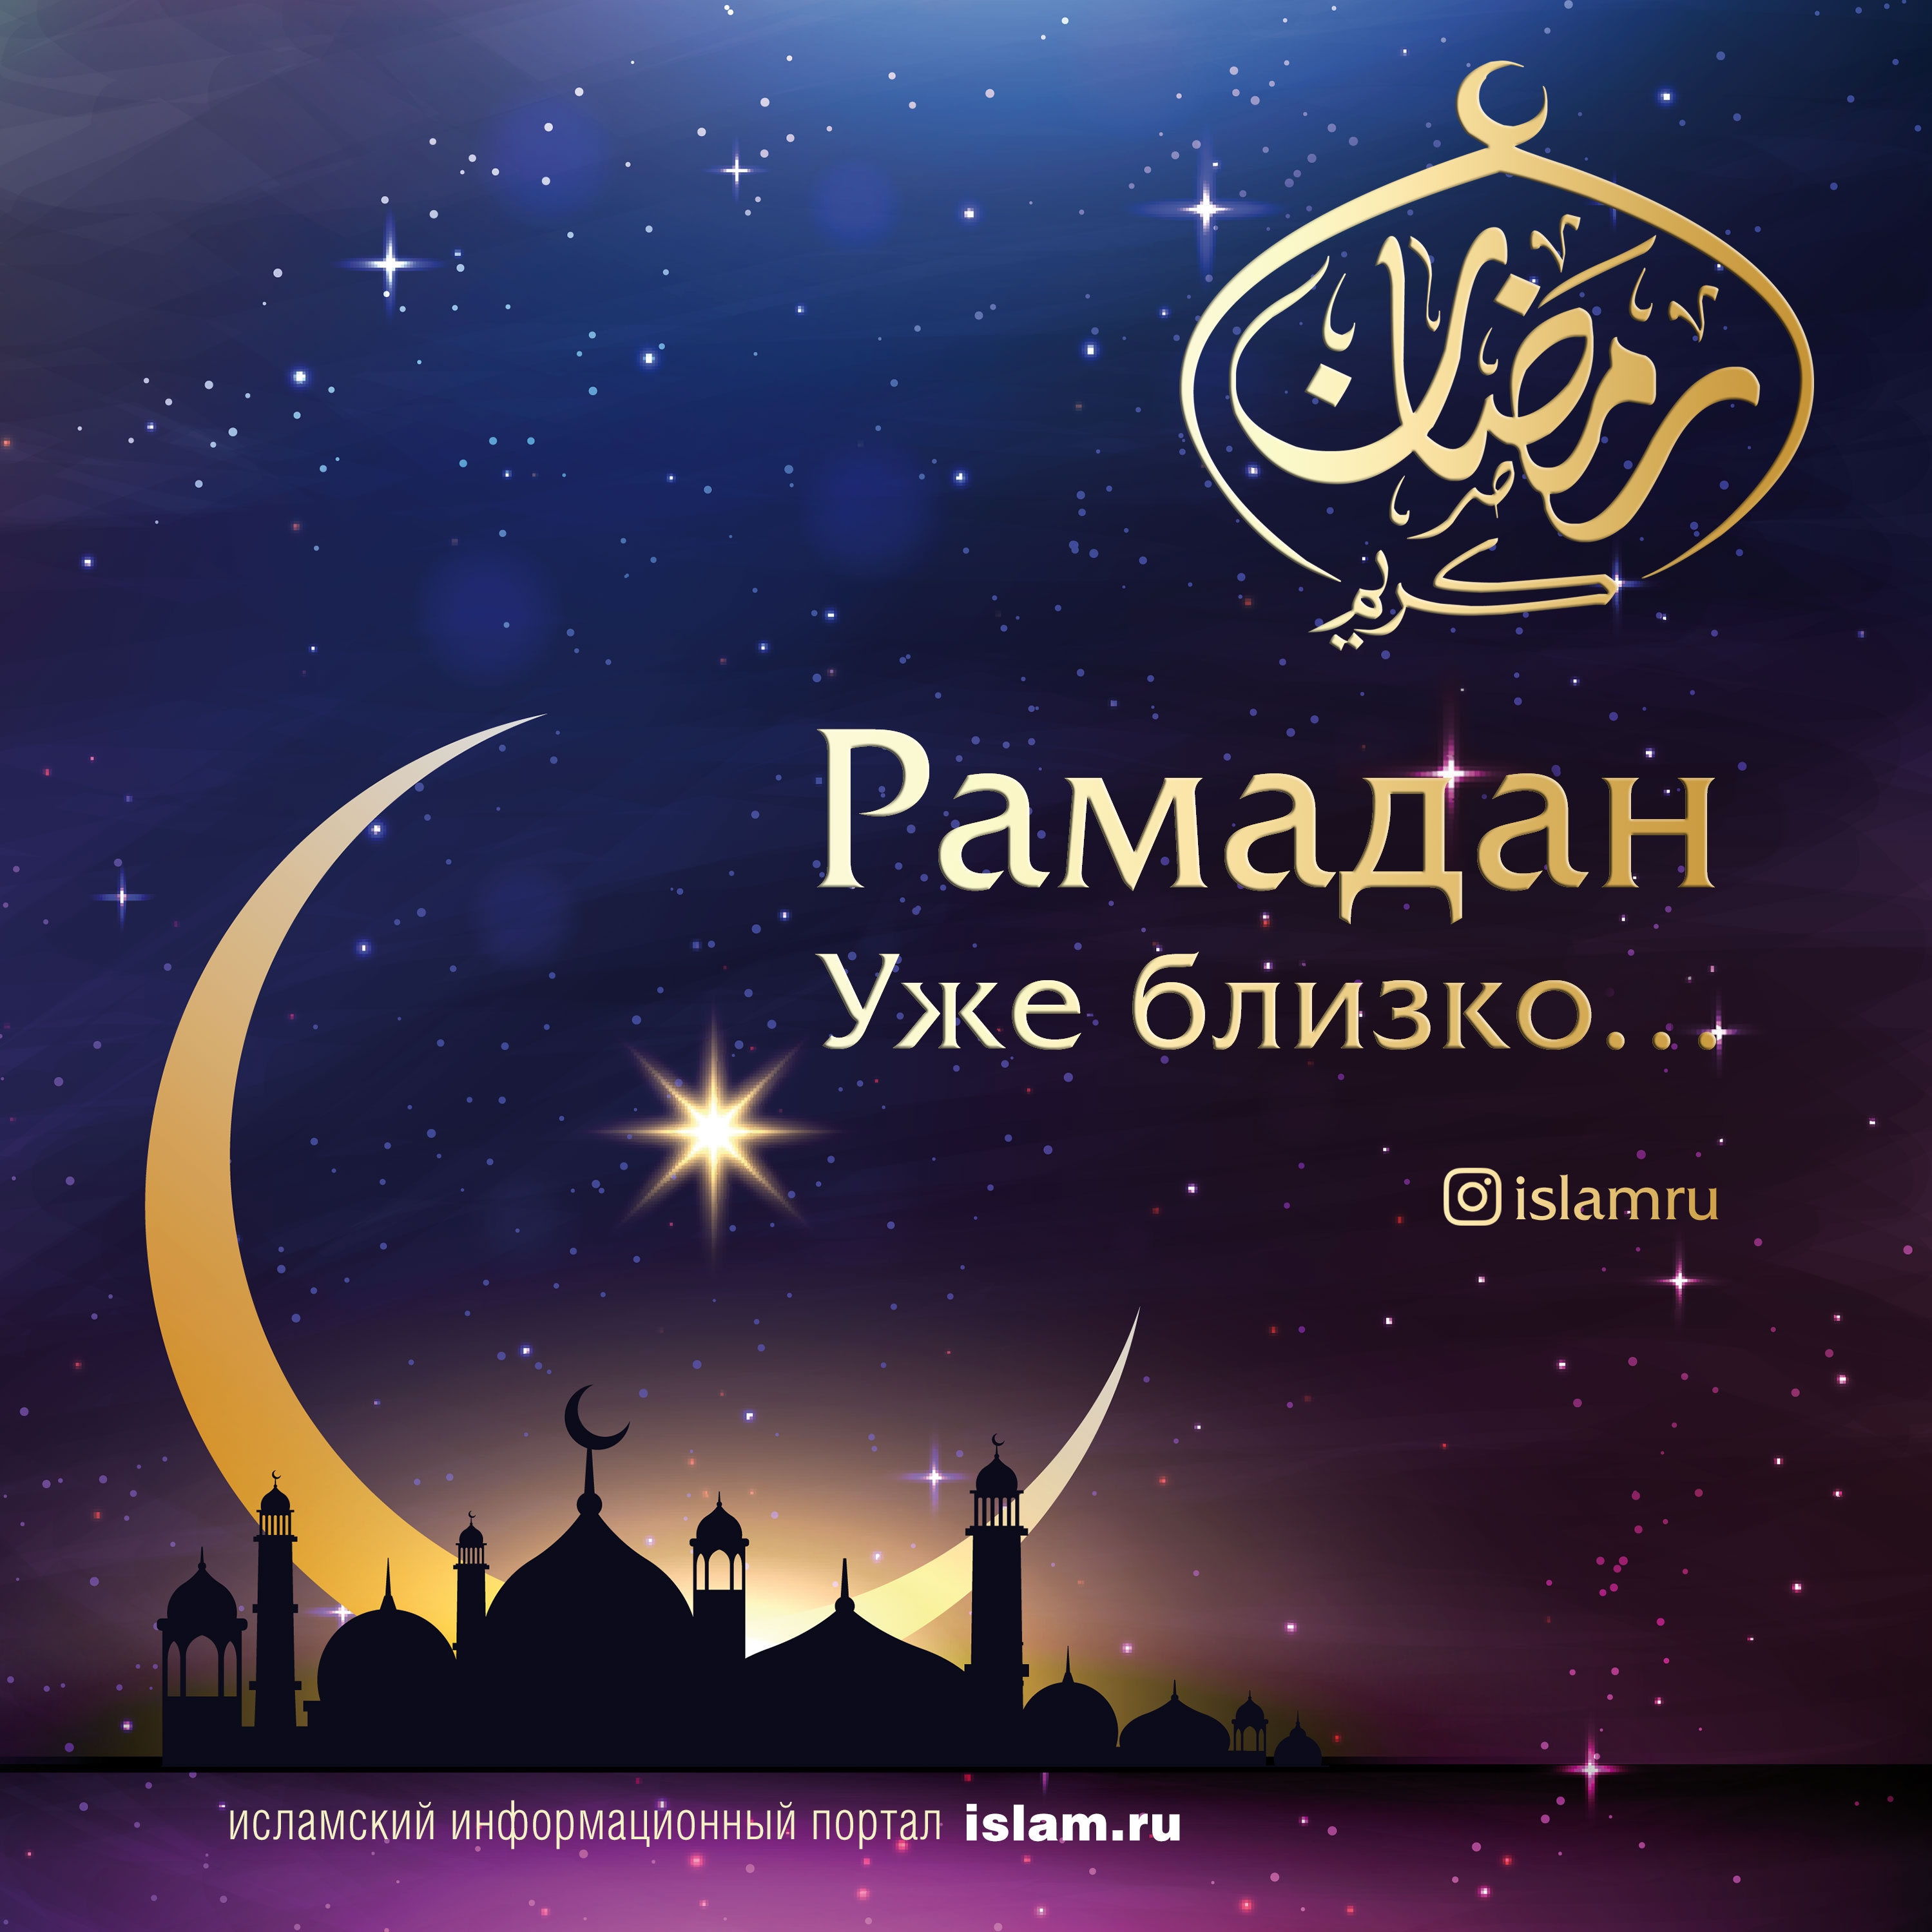 Открытки Священный месяц Рамадан. Священный месяц Рамазан. Поздравления с Рамазаном, Рамаданом  Прими поздравления. Пусть этот священный месяц Рамадан станет для тебя широкой дорогой к укреплению веры, пусть молитвы твои будут услышаны и приняты Всевышним.